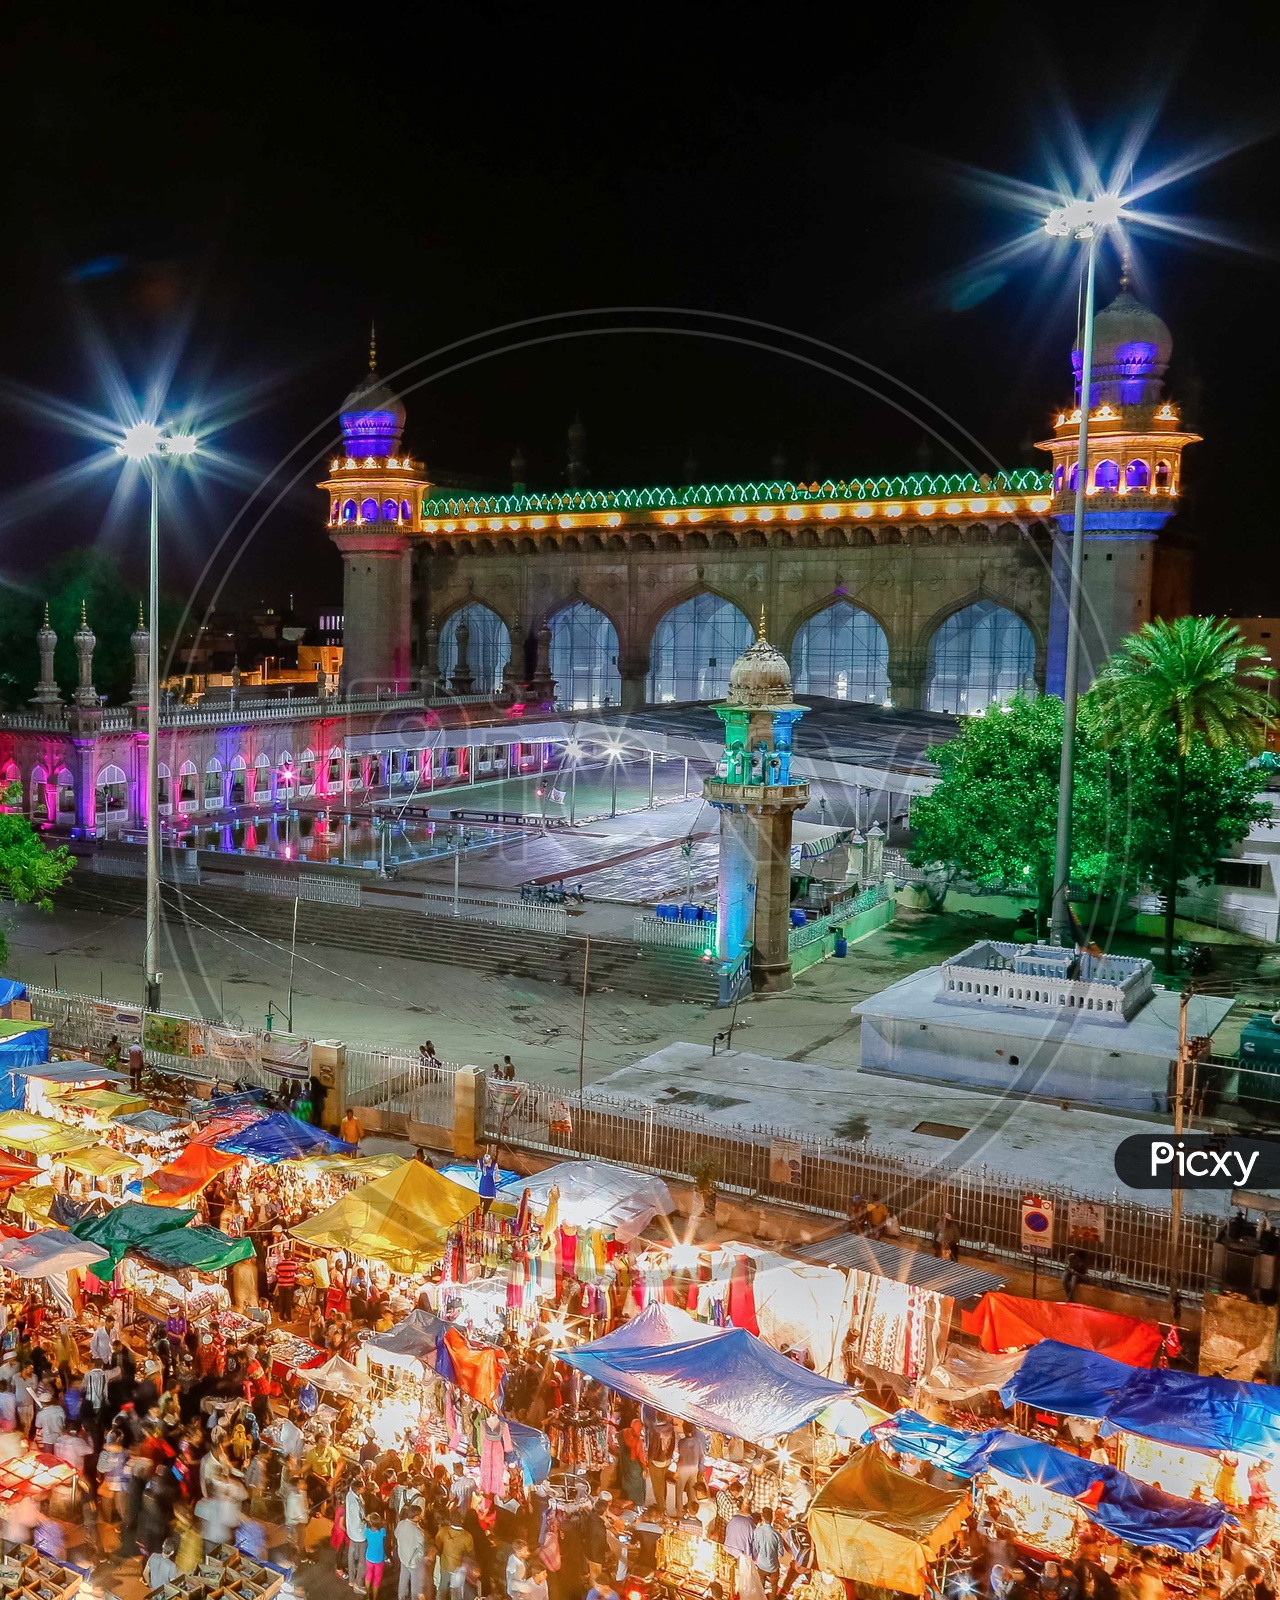 Mecca Masjid on the night of Eid